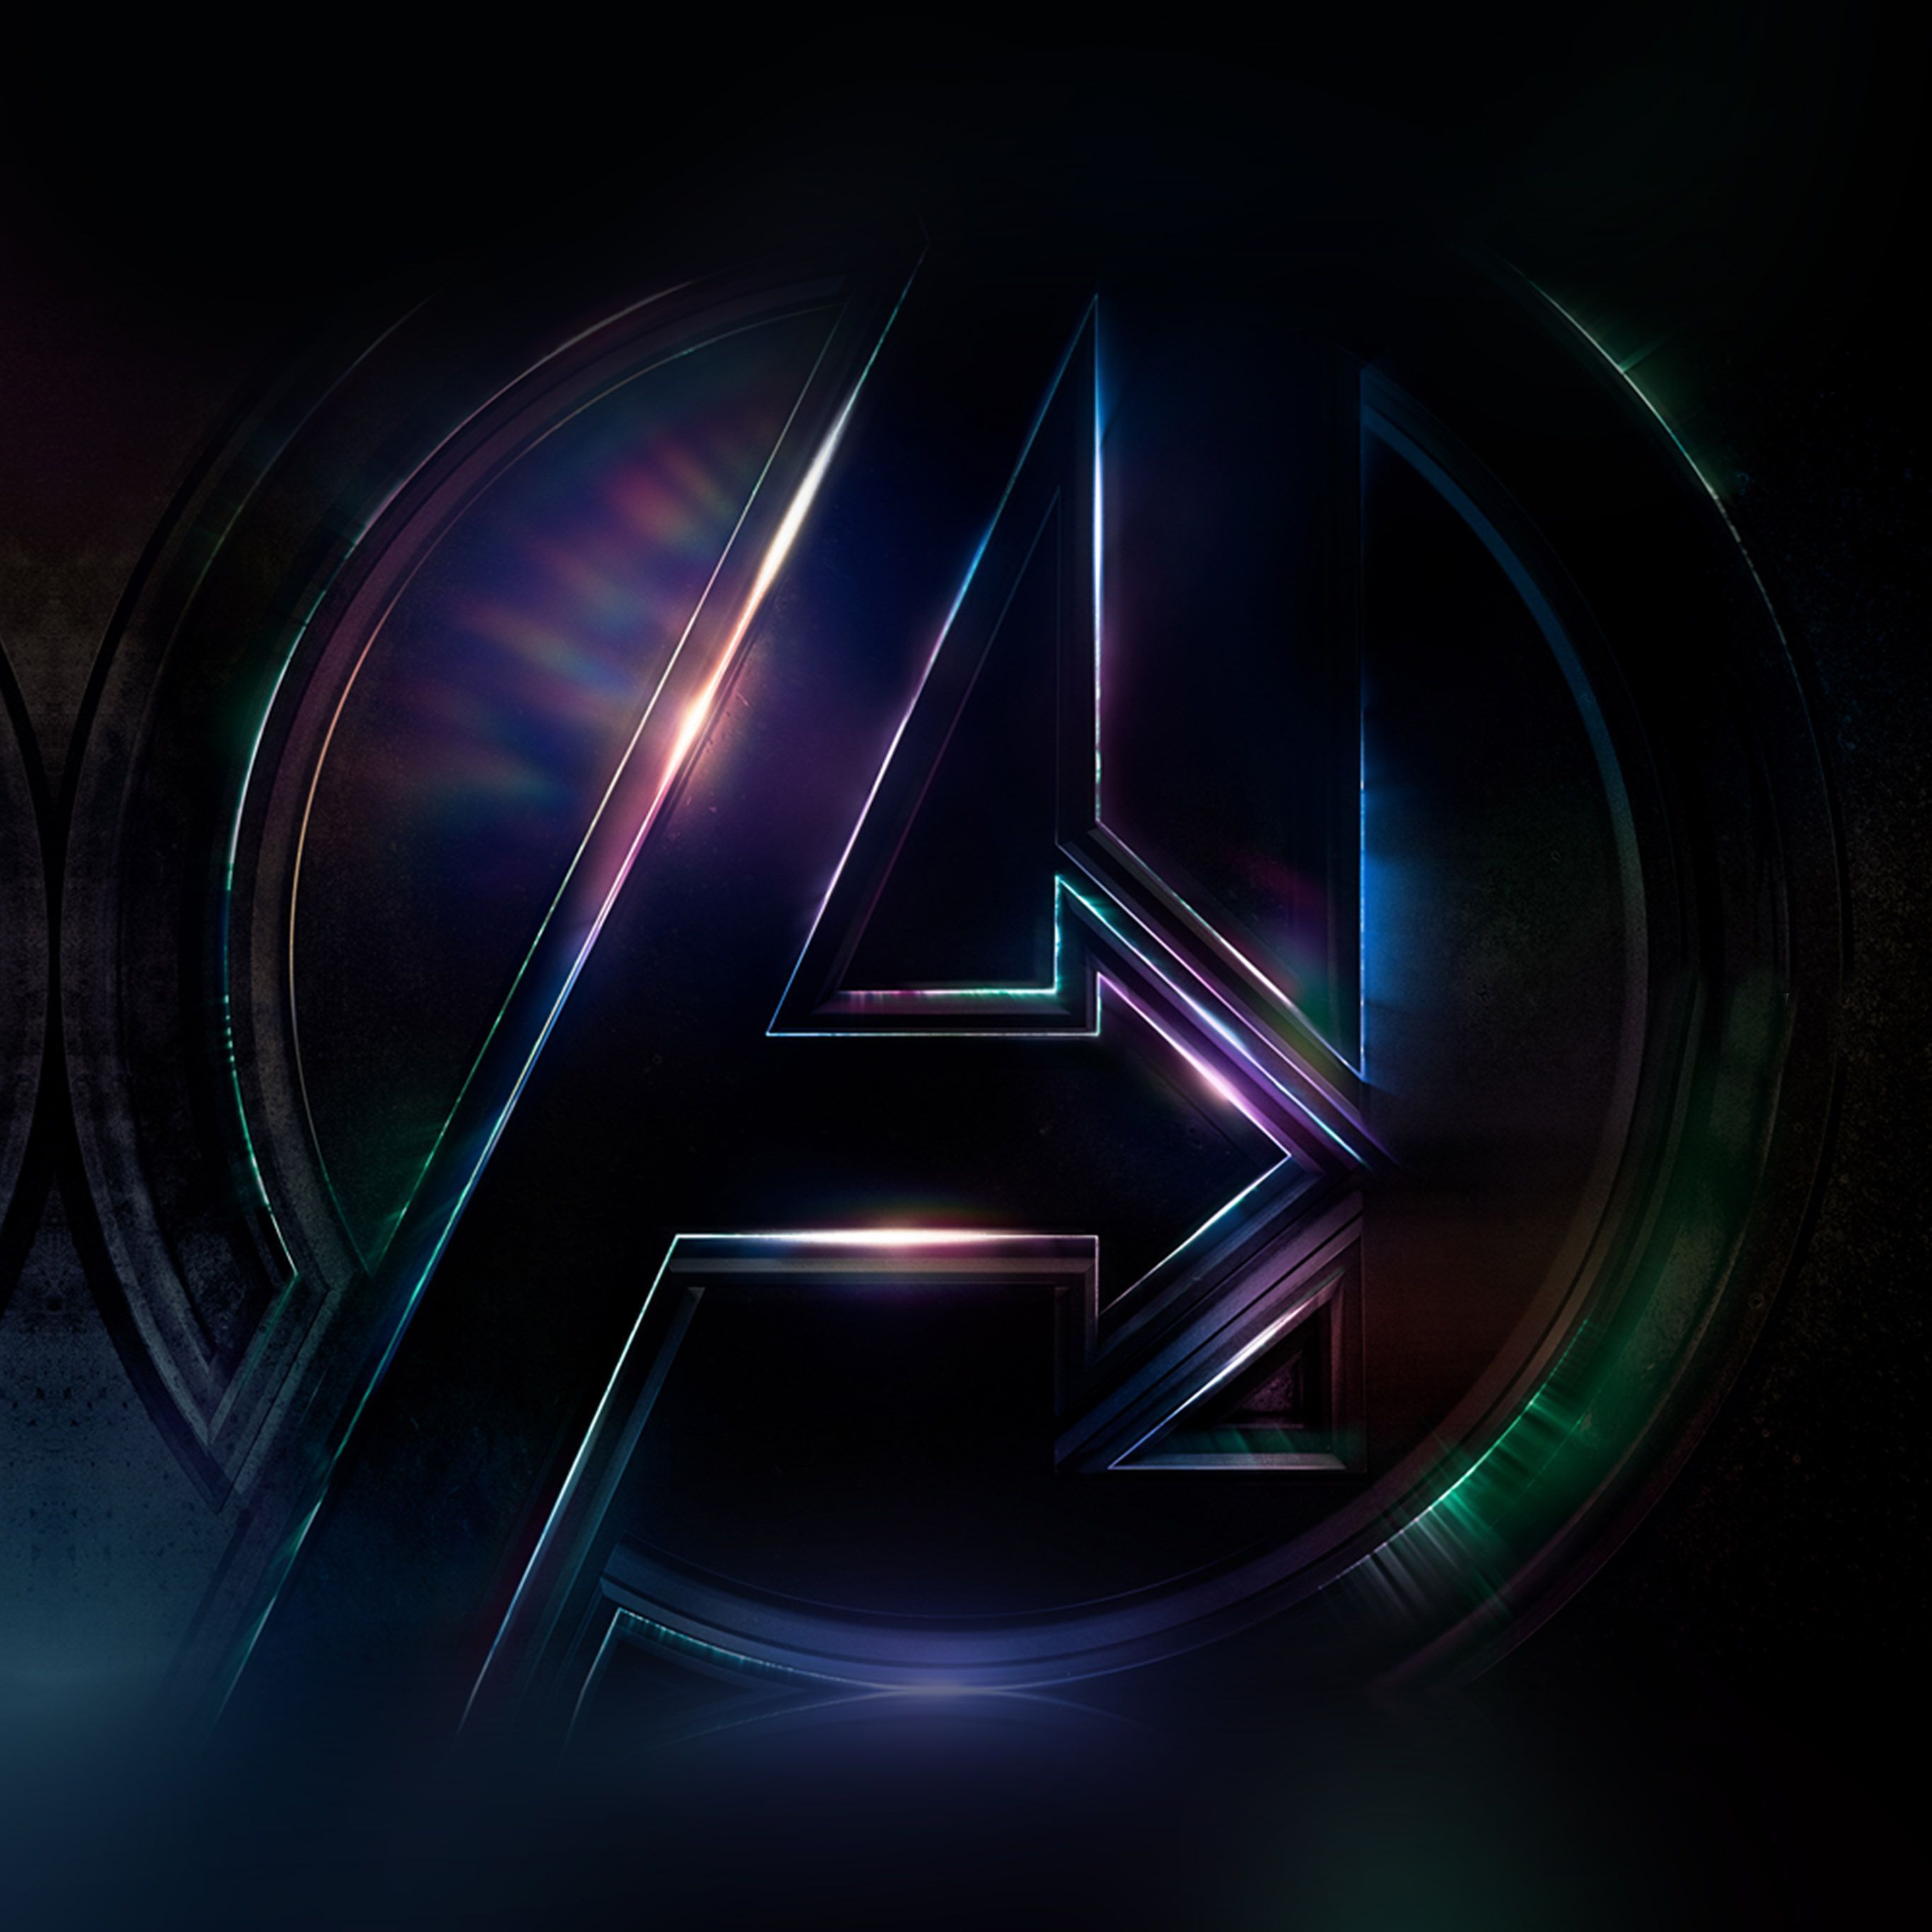 Marvel Avengers Logo Wallpaper Free Marvel Avengers Logo Background - Avengers logo, Film art, Avengers wallpaper